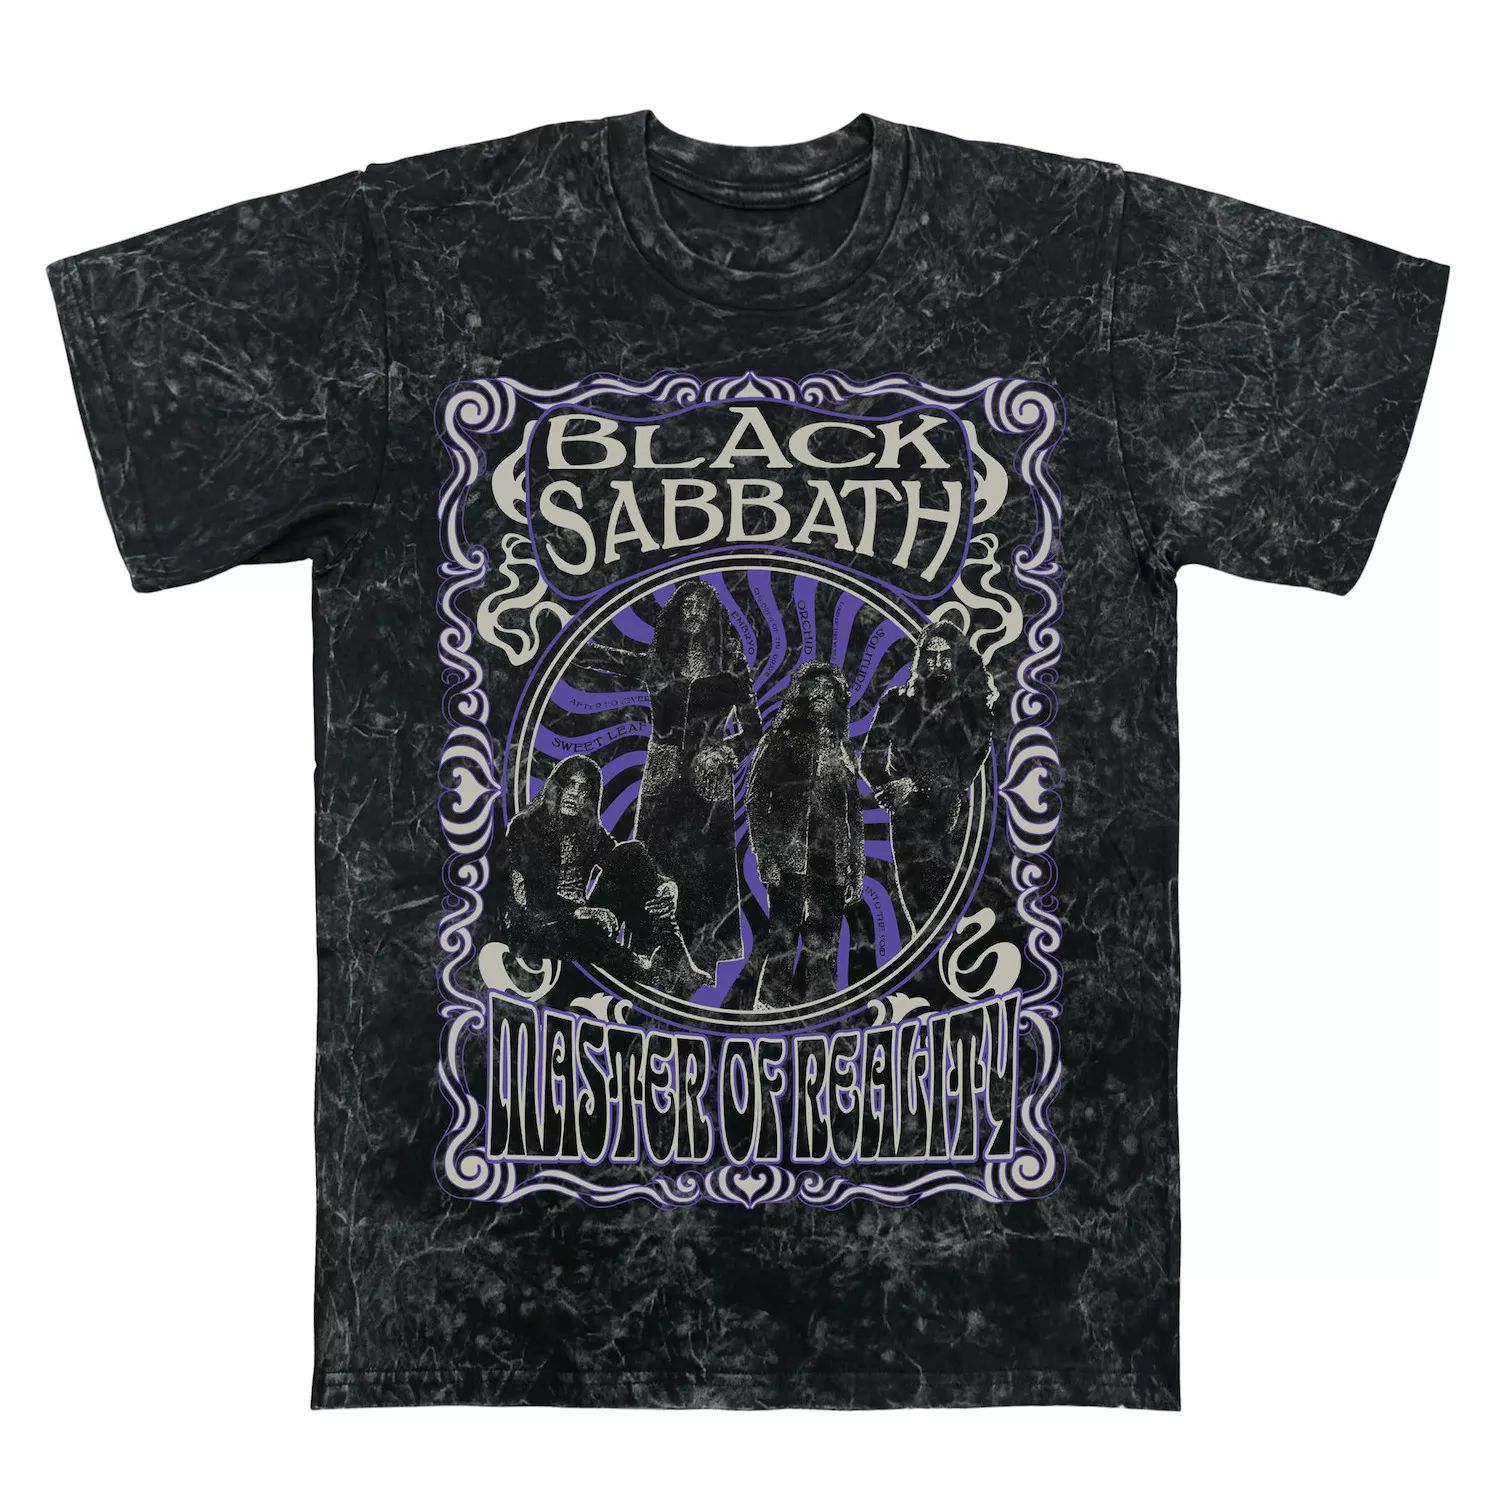 Мужская футболка Black Sabbath Master Of Reality с графическим рисунком, минеральная стирка Licensed Character black sabbath master of reality lp спрей для очистки lp с микрофиброй 250мл набор